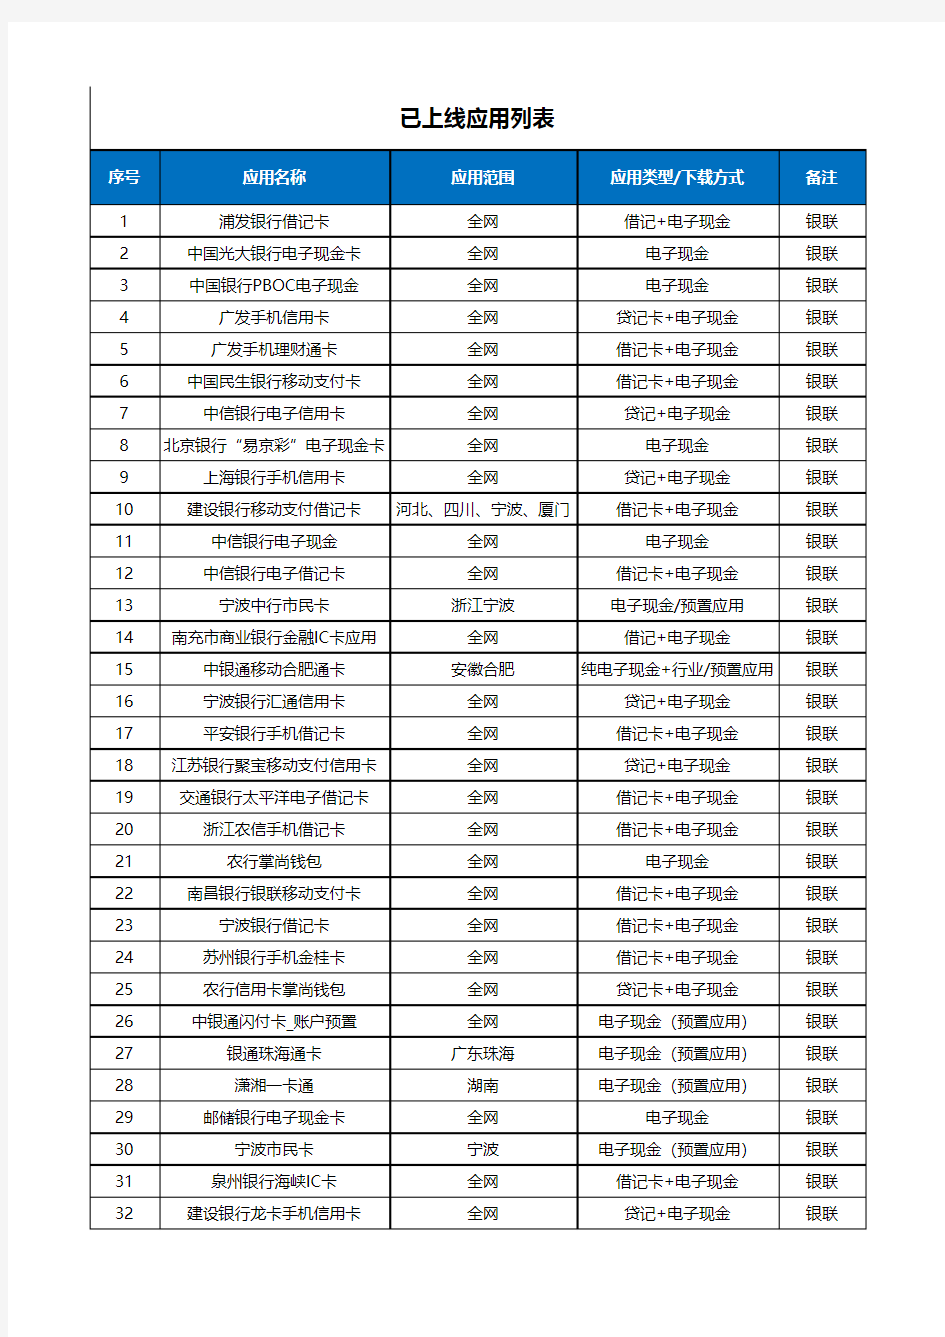 中国移动NFC终端及应用列表